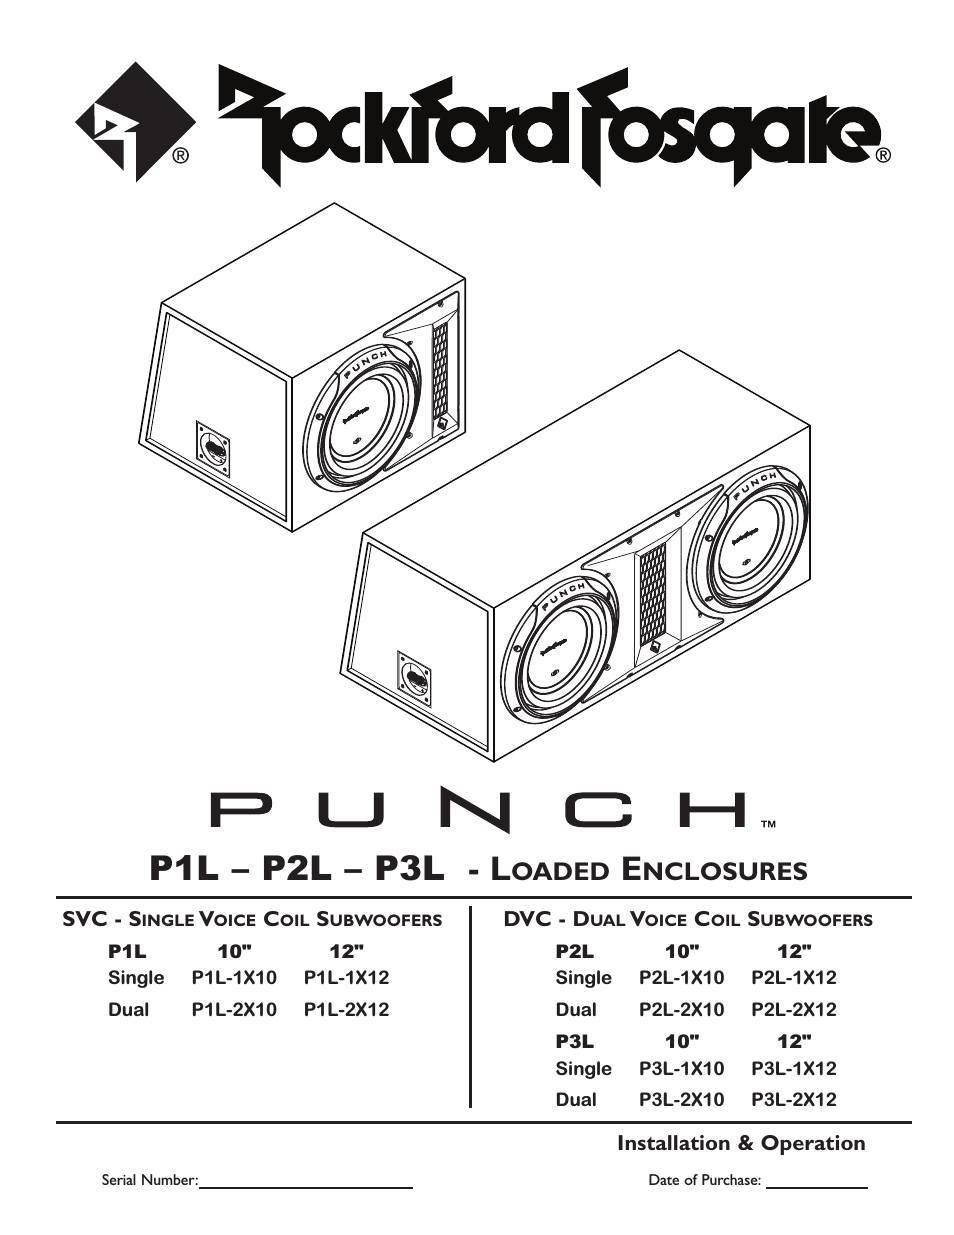 Punch P1L-2X12